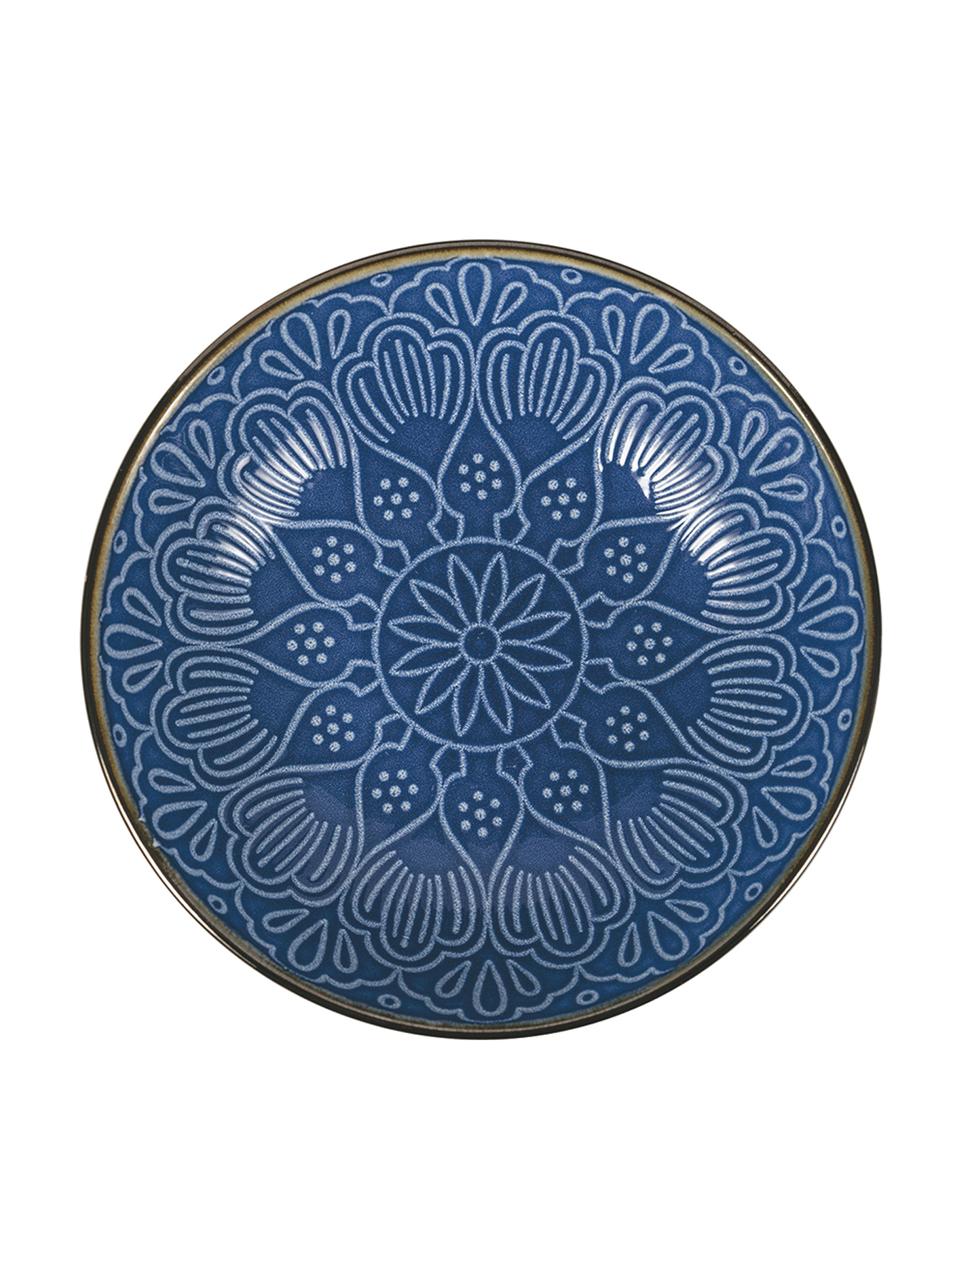 Geschirr-Set Baku mit Ornament-Relief, 6 Personen (18-tlg.), Keramik, Blau, Set mit verschiedenen Größen